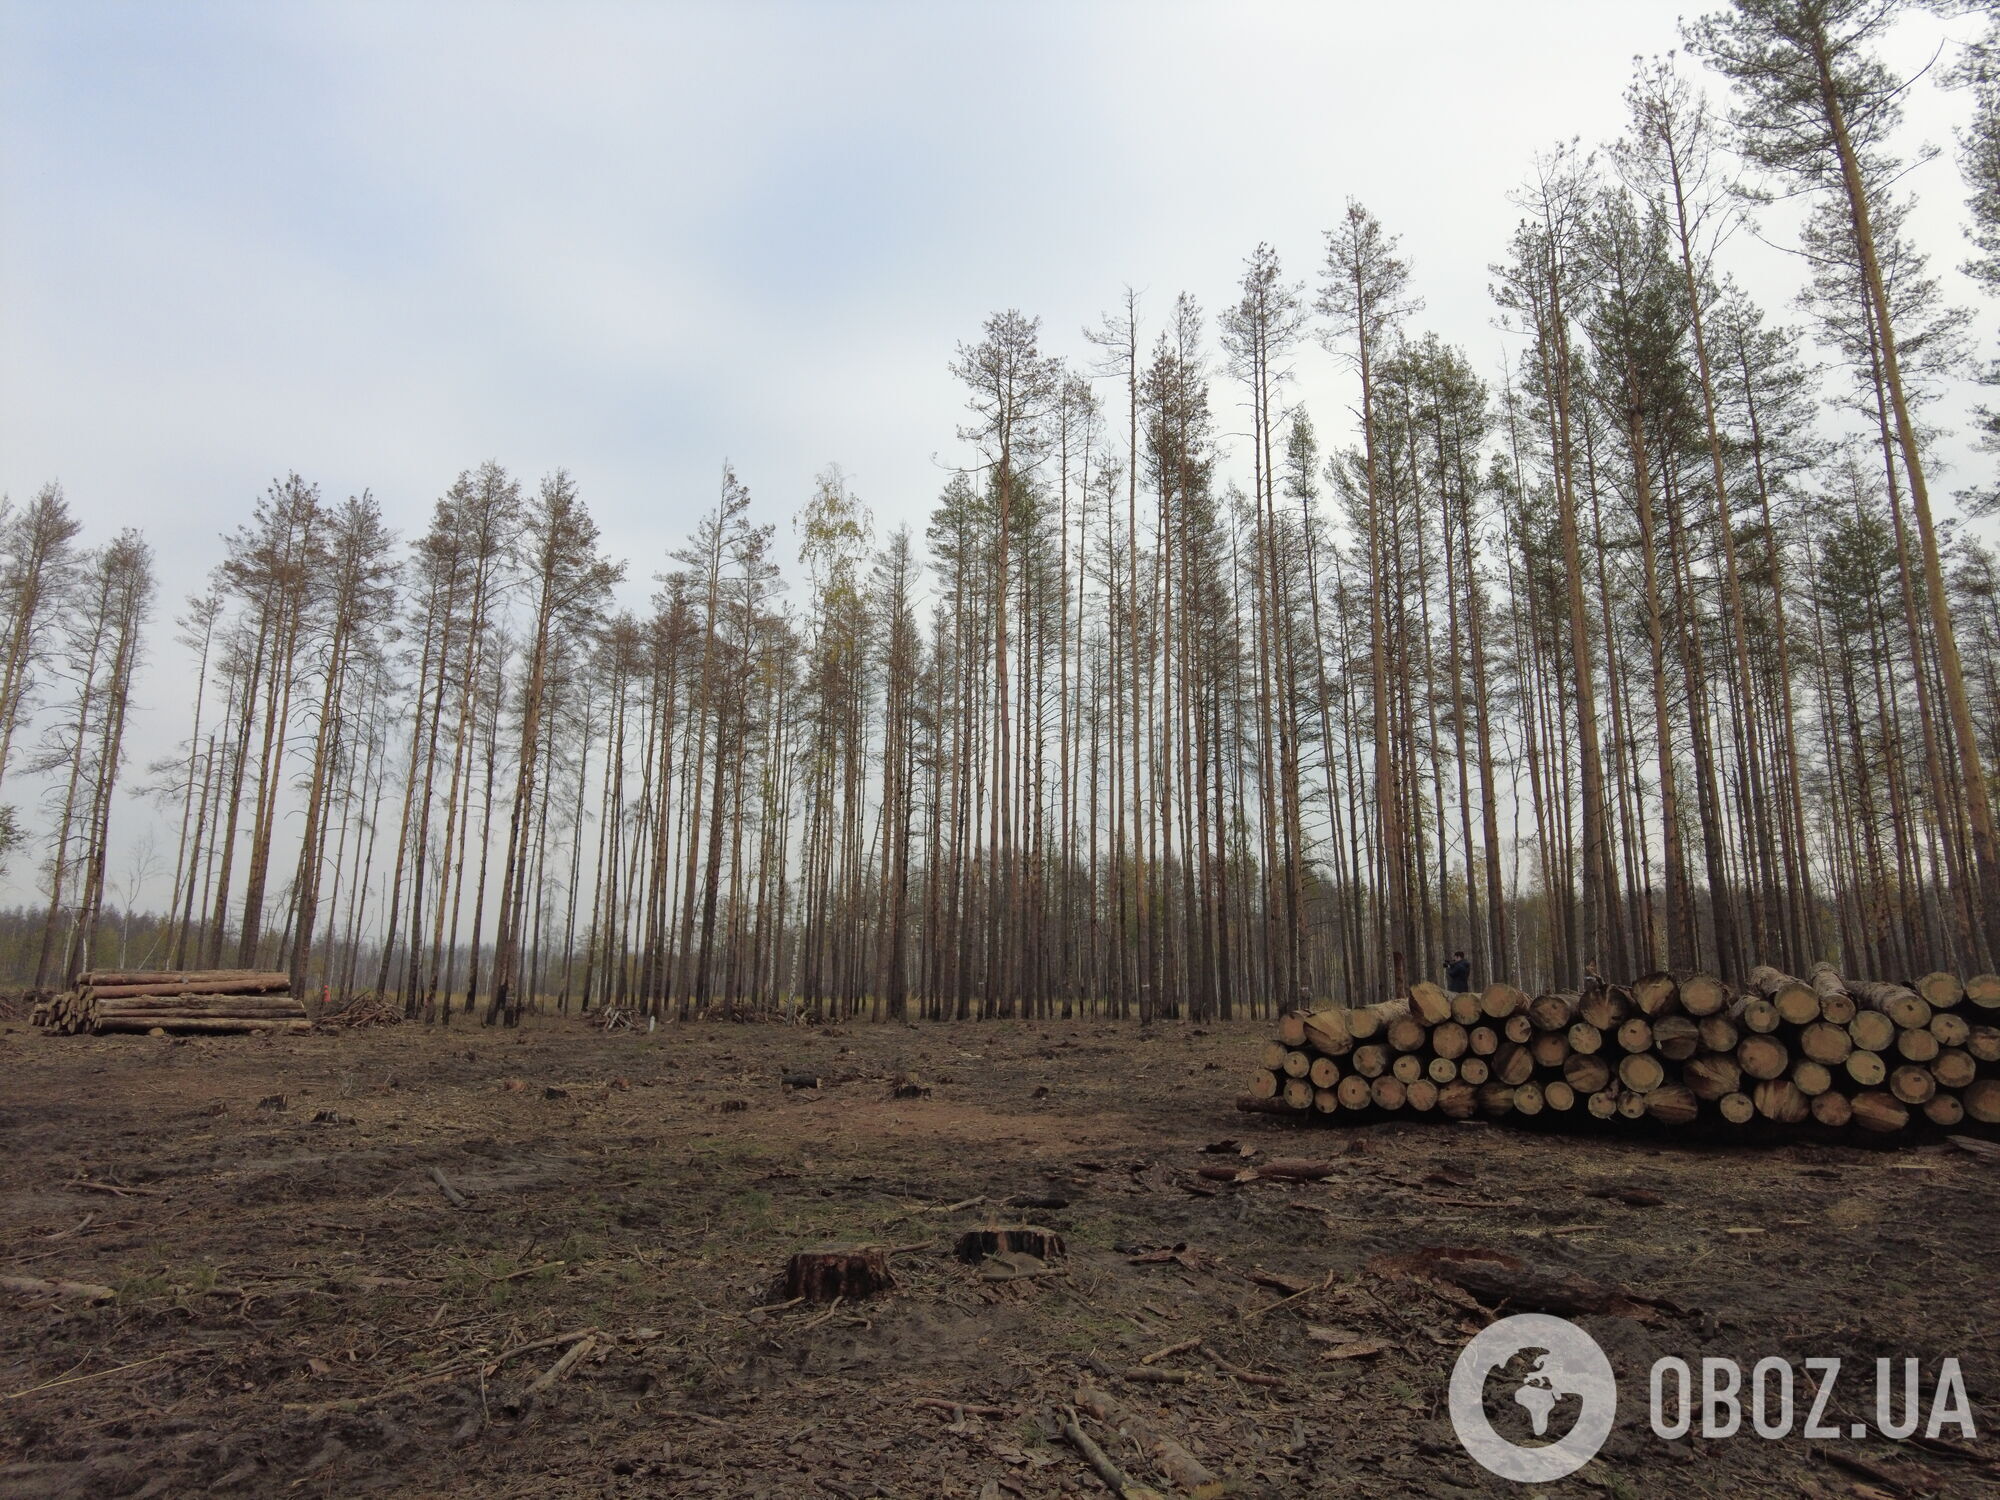 Участок обгоревшего леса в Овручском районе Житомирской области